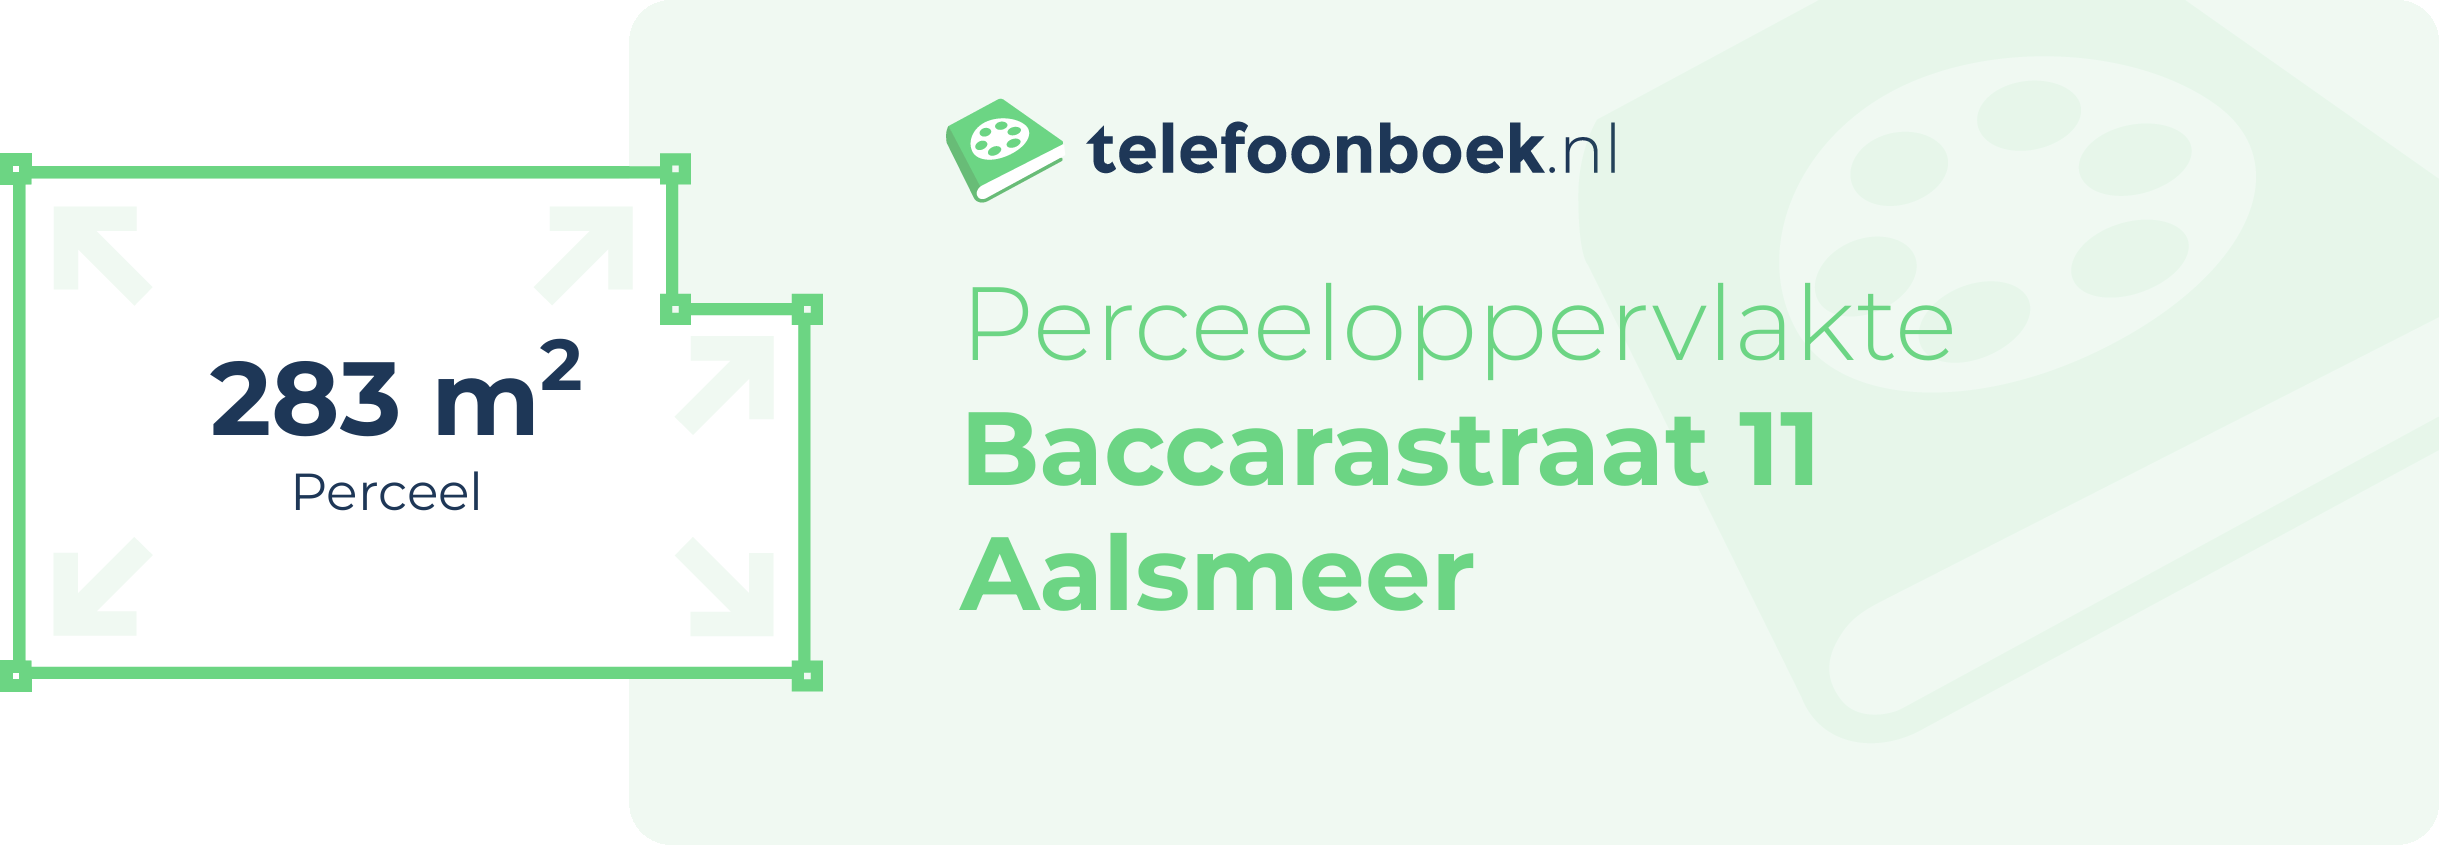 Perceeloppervlakte Baccarastraat 11 Aalsmeer